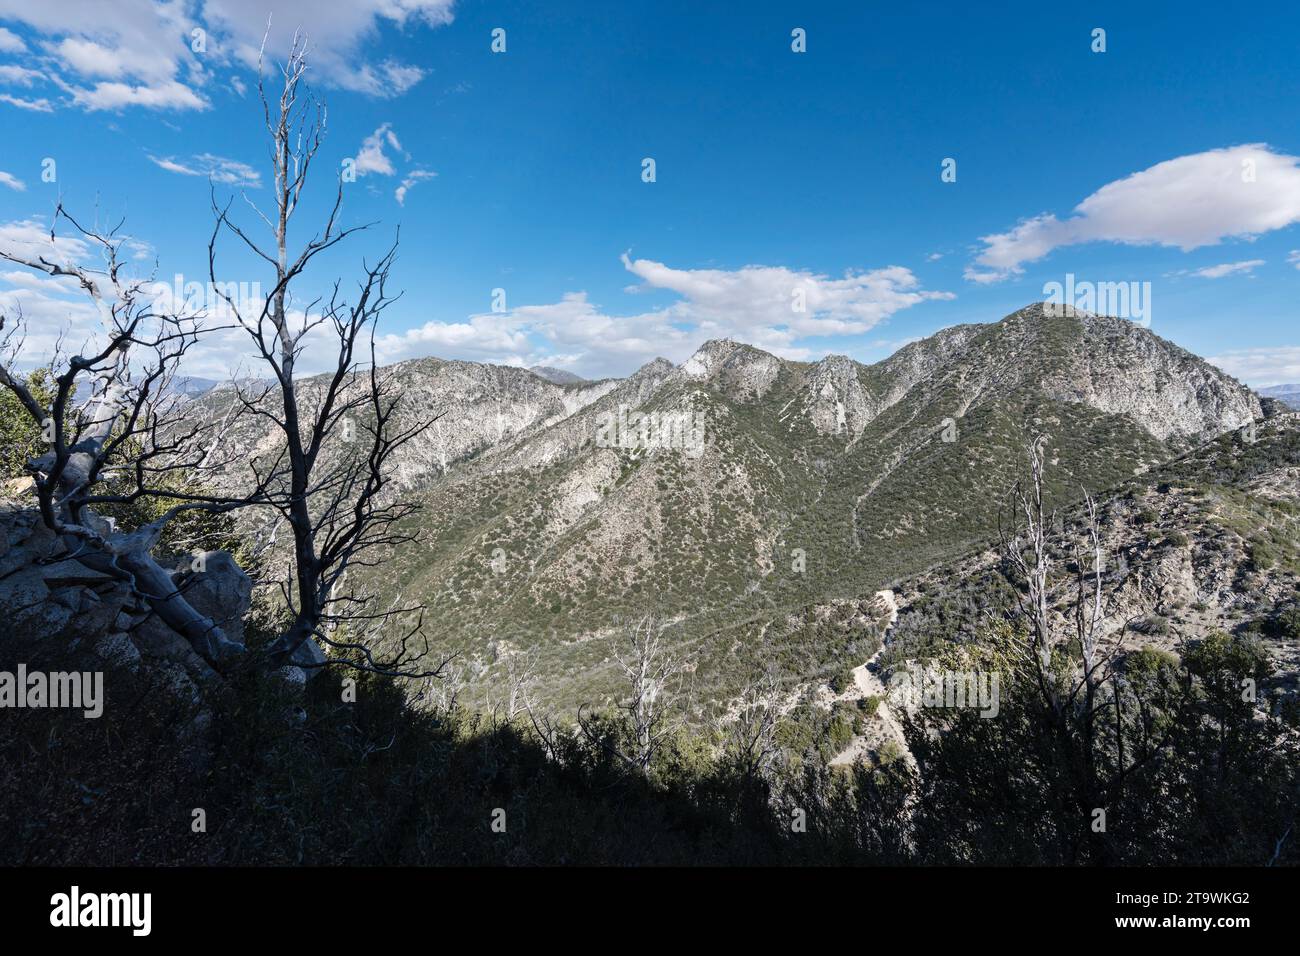 Vue sur San Gabriel Peak et le mont Disapitation depuis le sentier du mont Lowe dans la forêt nationale d'Angeles près du mont Wilson en Californie du Sud. Banque D'Images